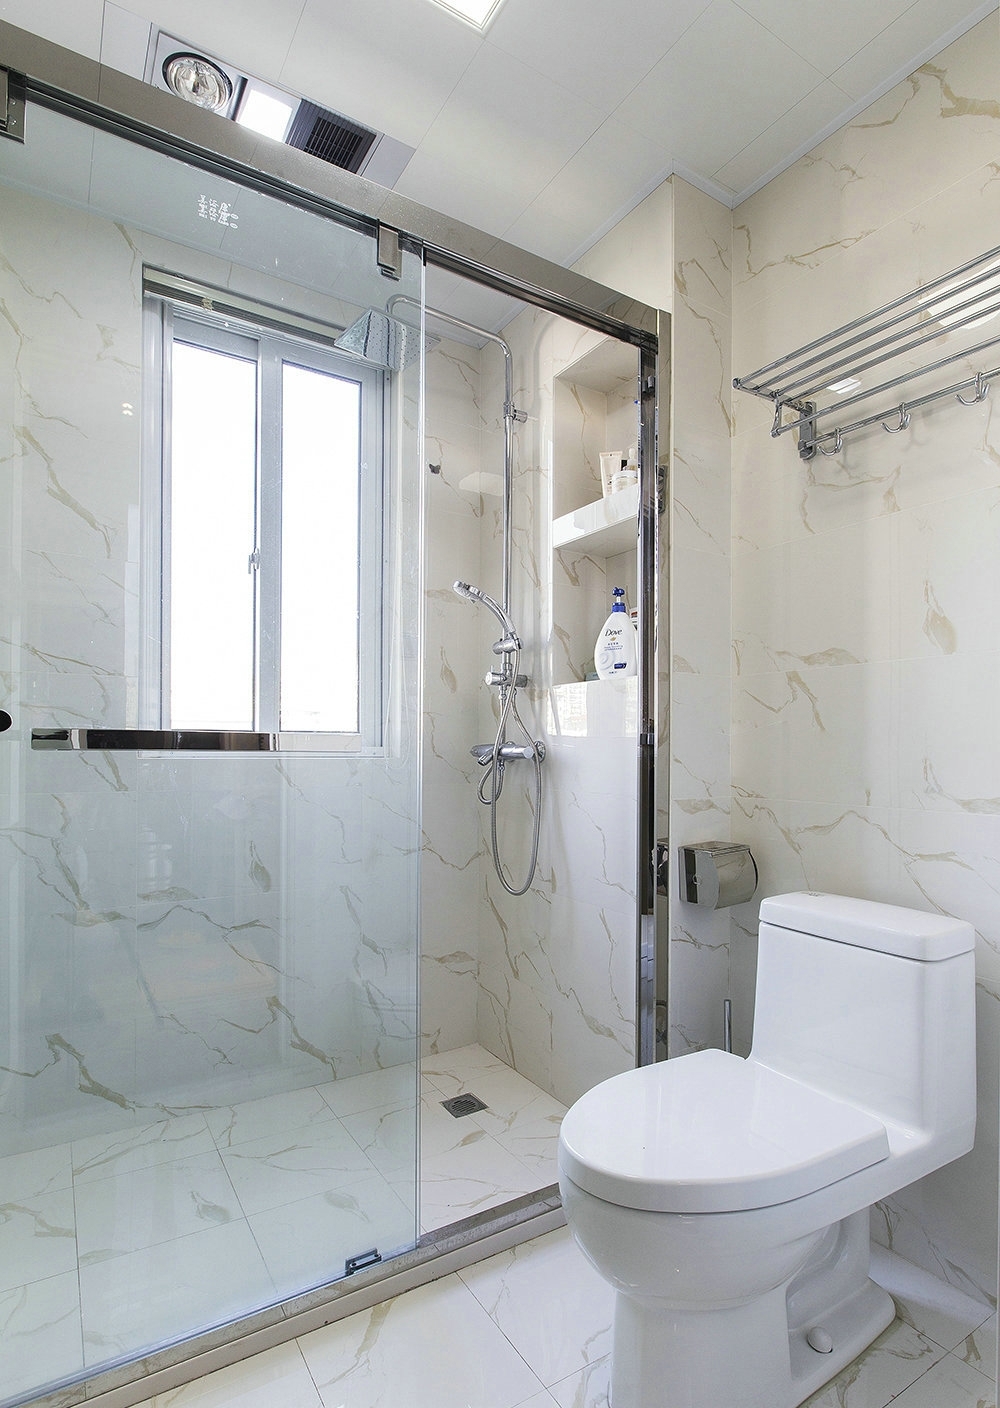 卫浴空间大面积铺贴大理石，并进行了干湿分离设计，提升了空间使用率。